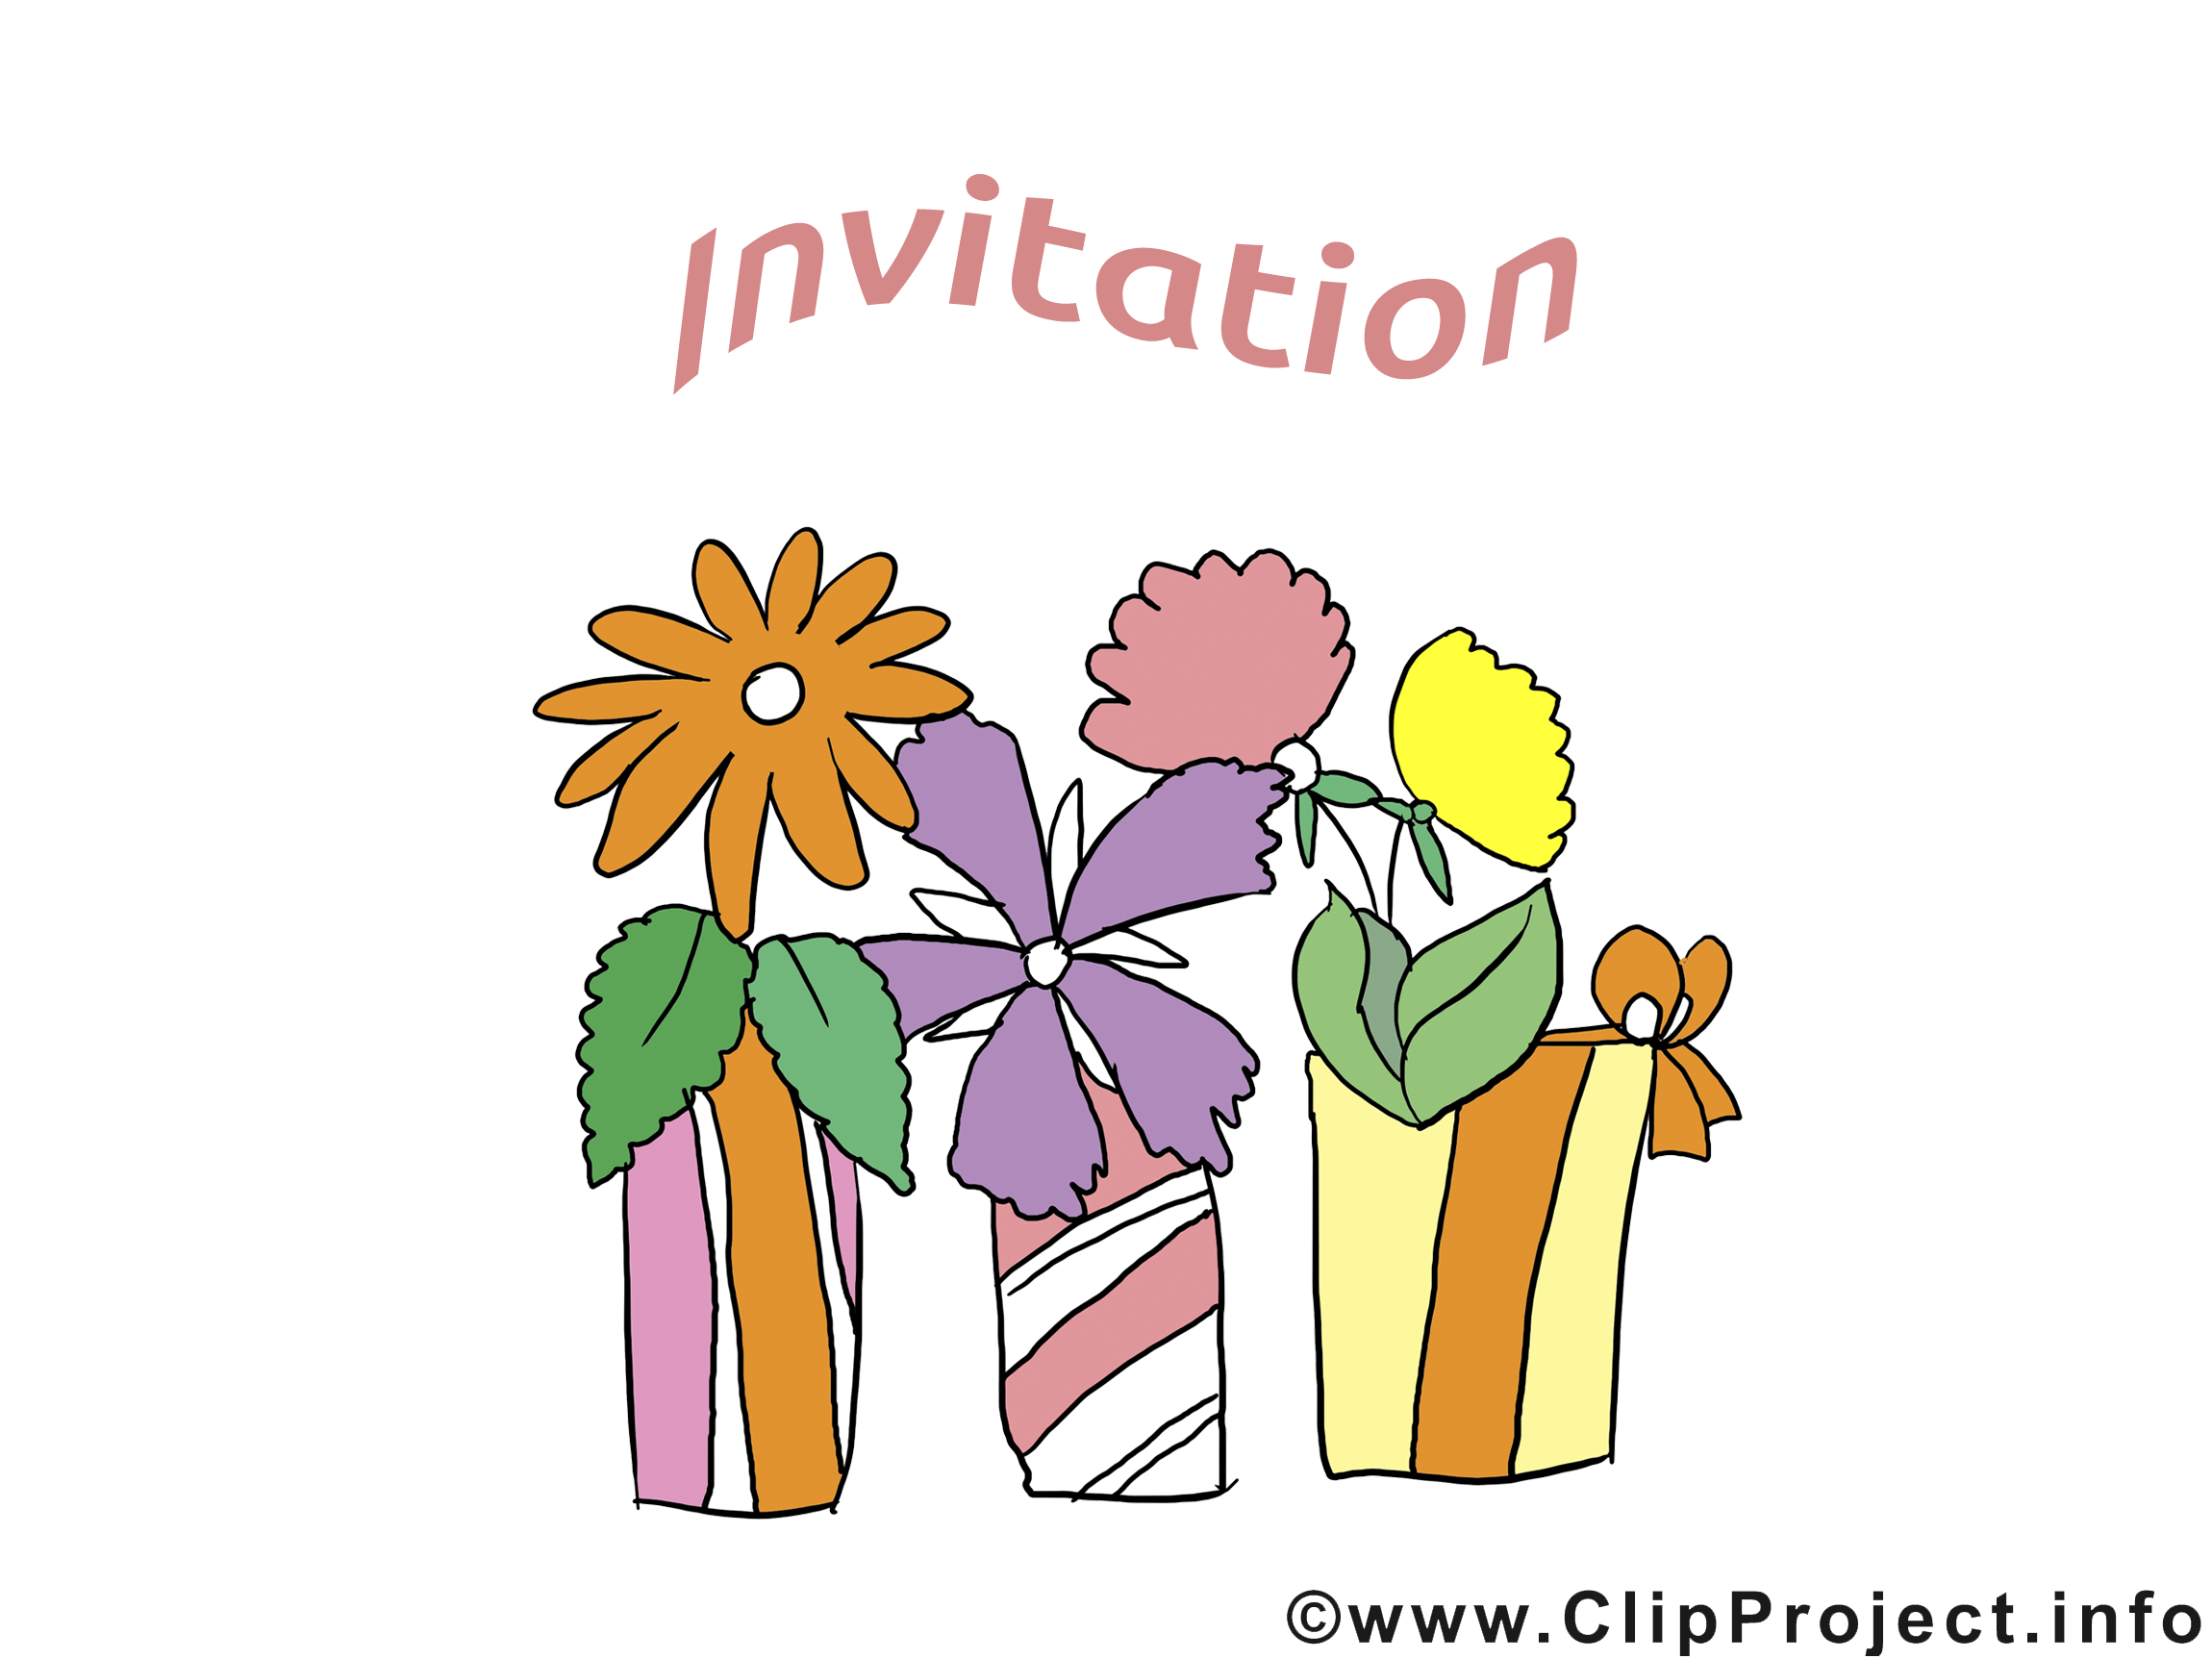 clipart gratuit invitation - photo #7